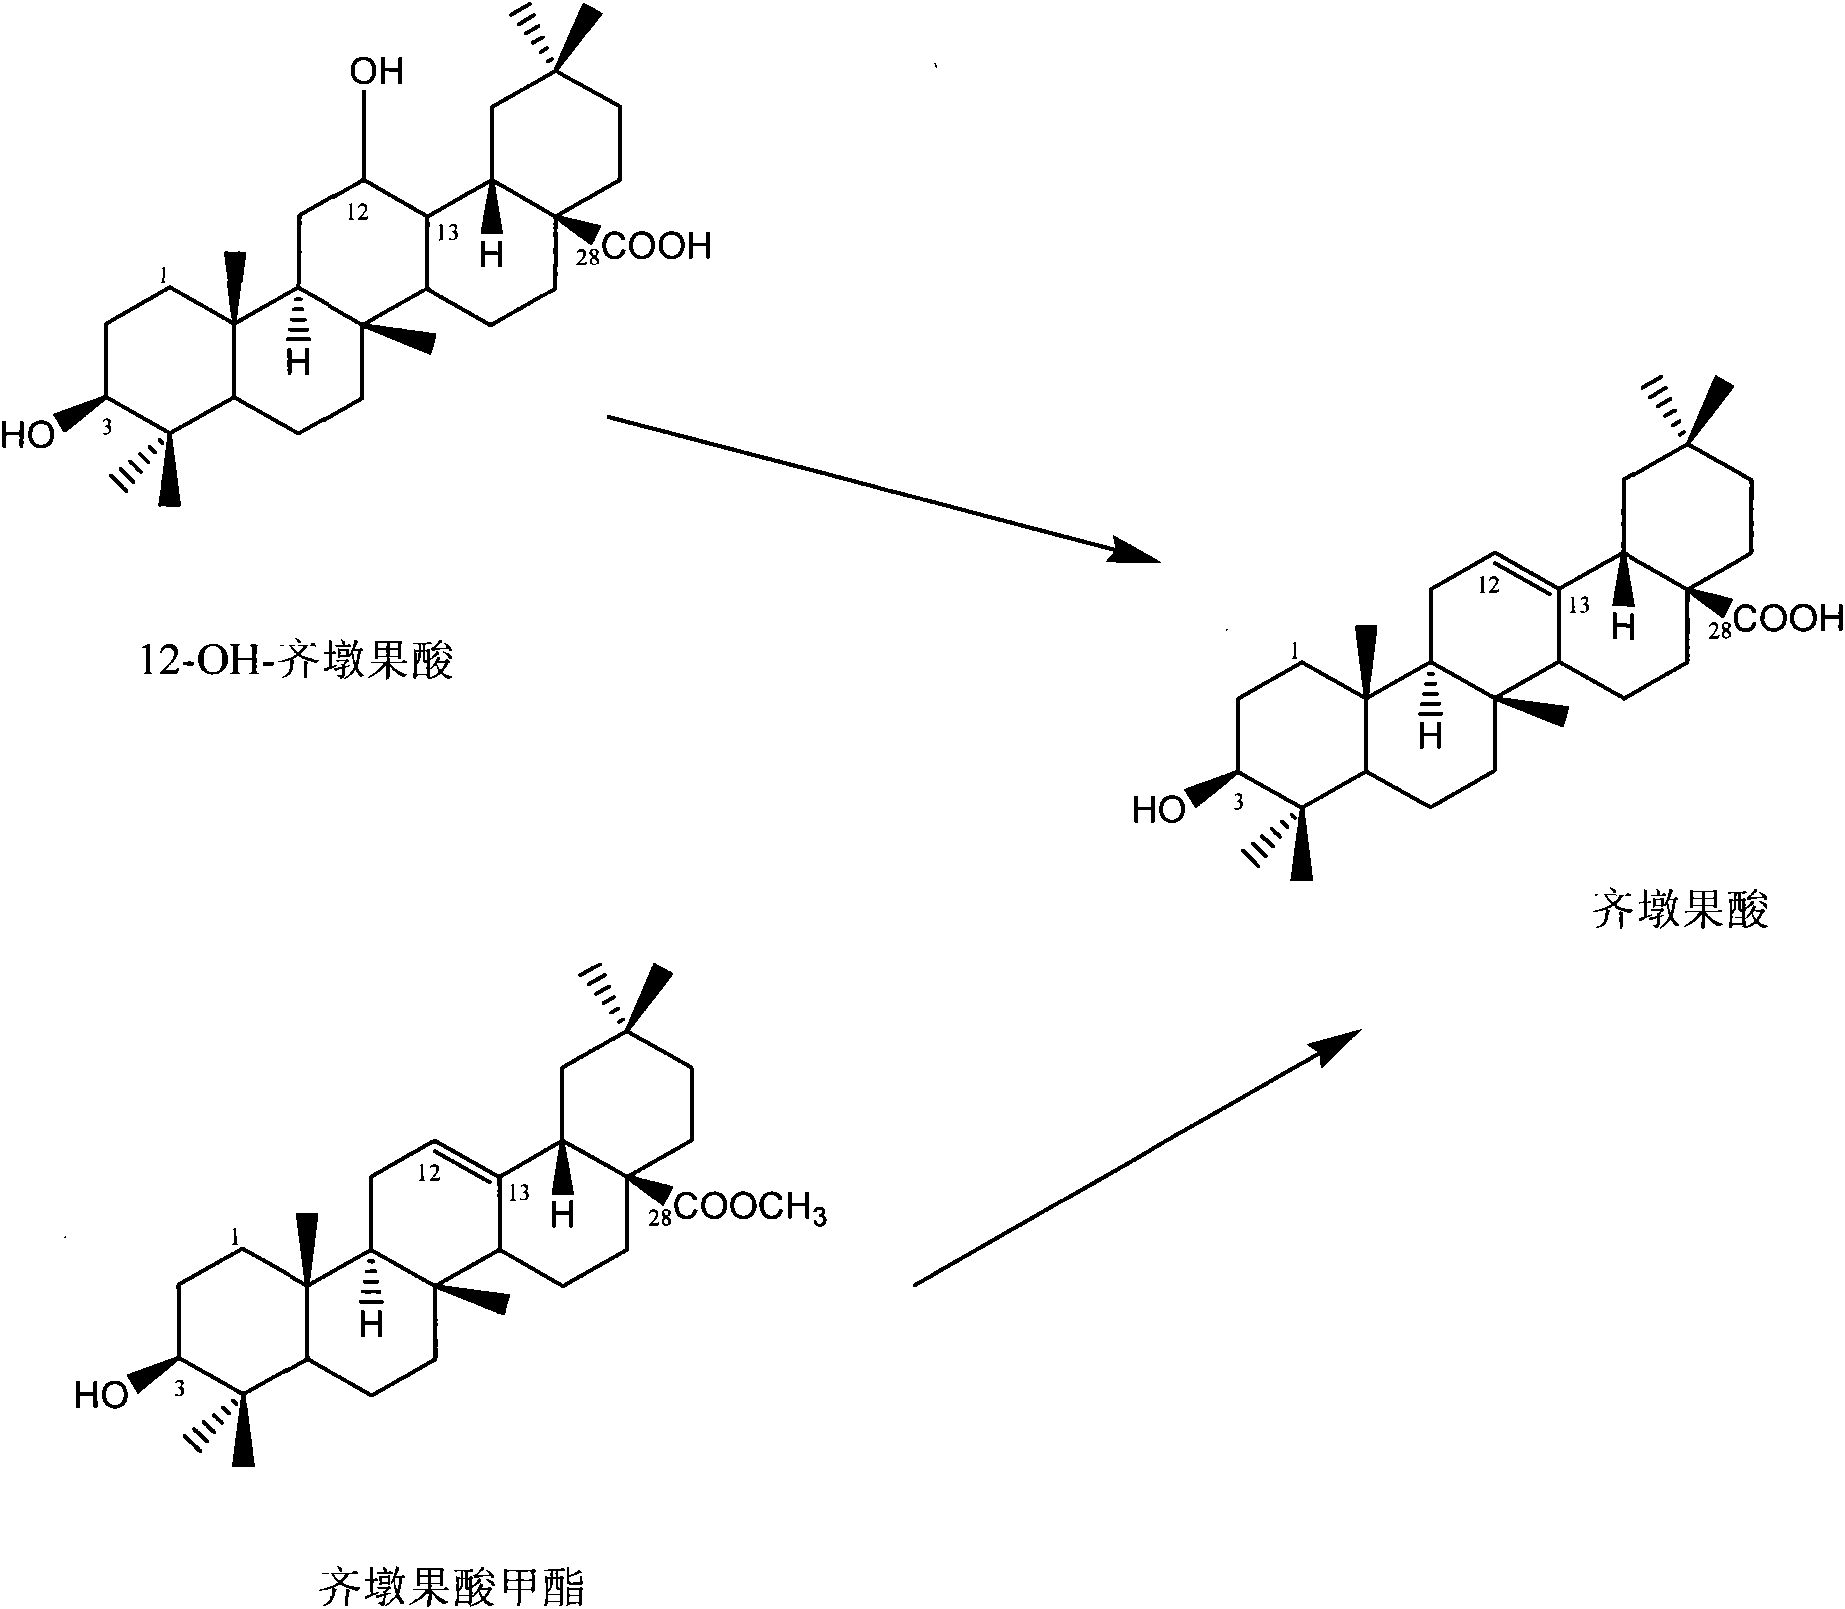 Preparation of oleanolic acid structure analogues and semisynthesis method of oleanolic acid